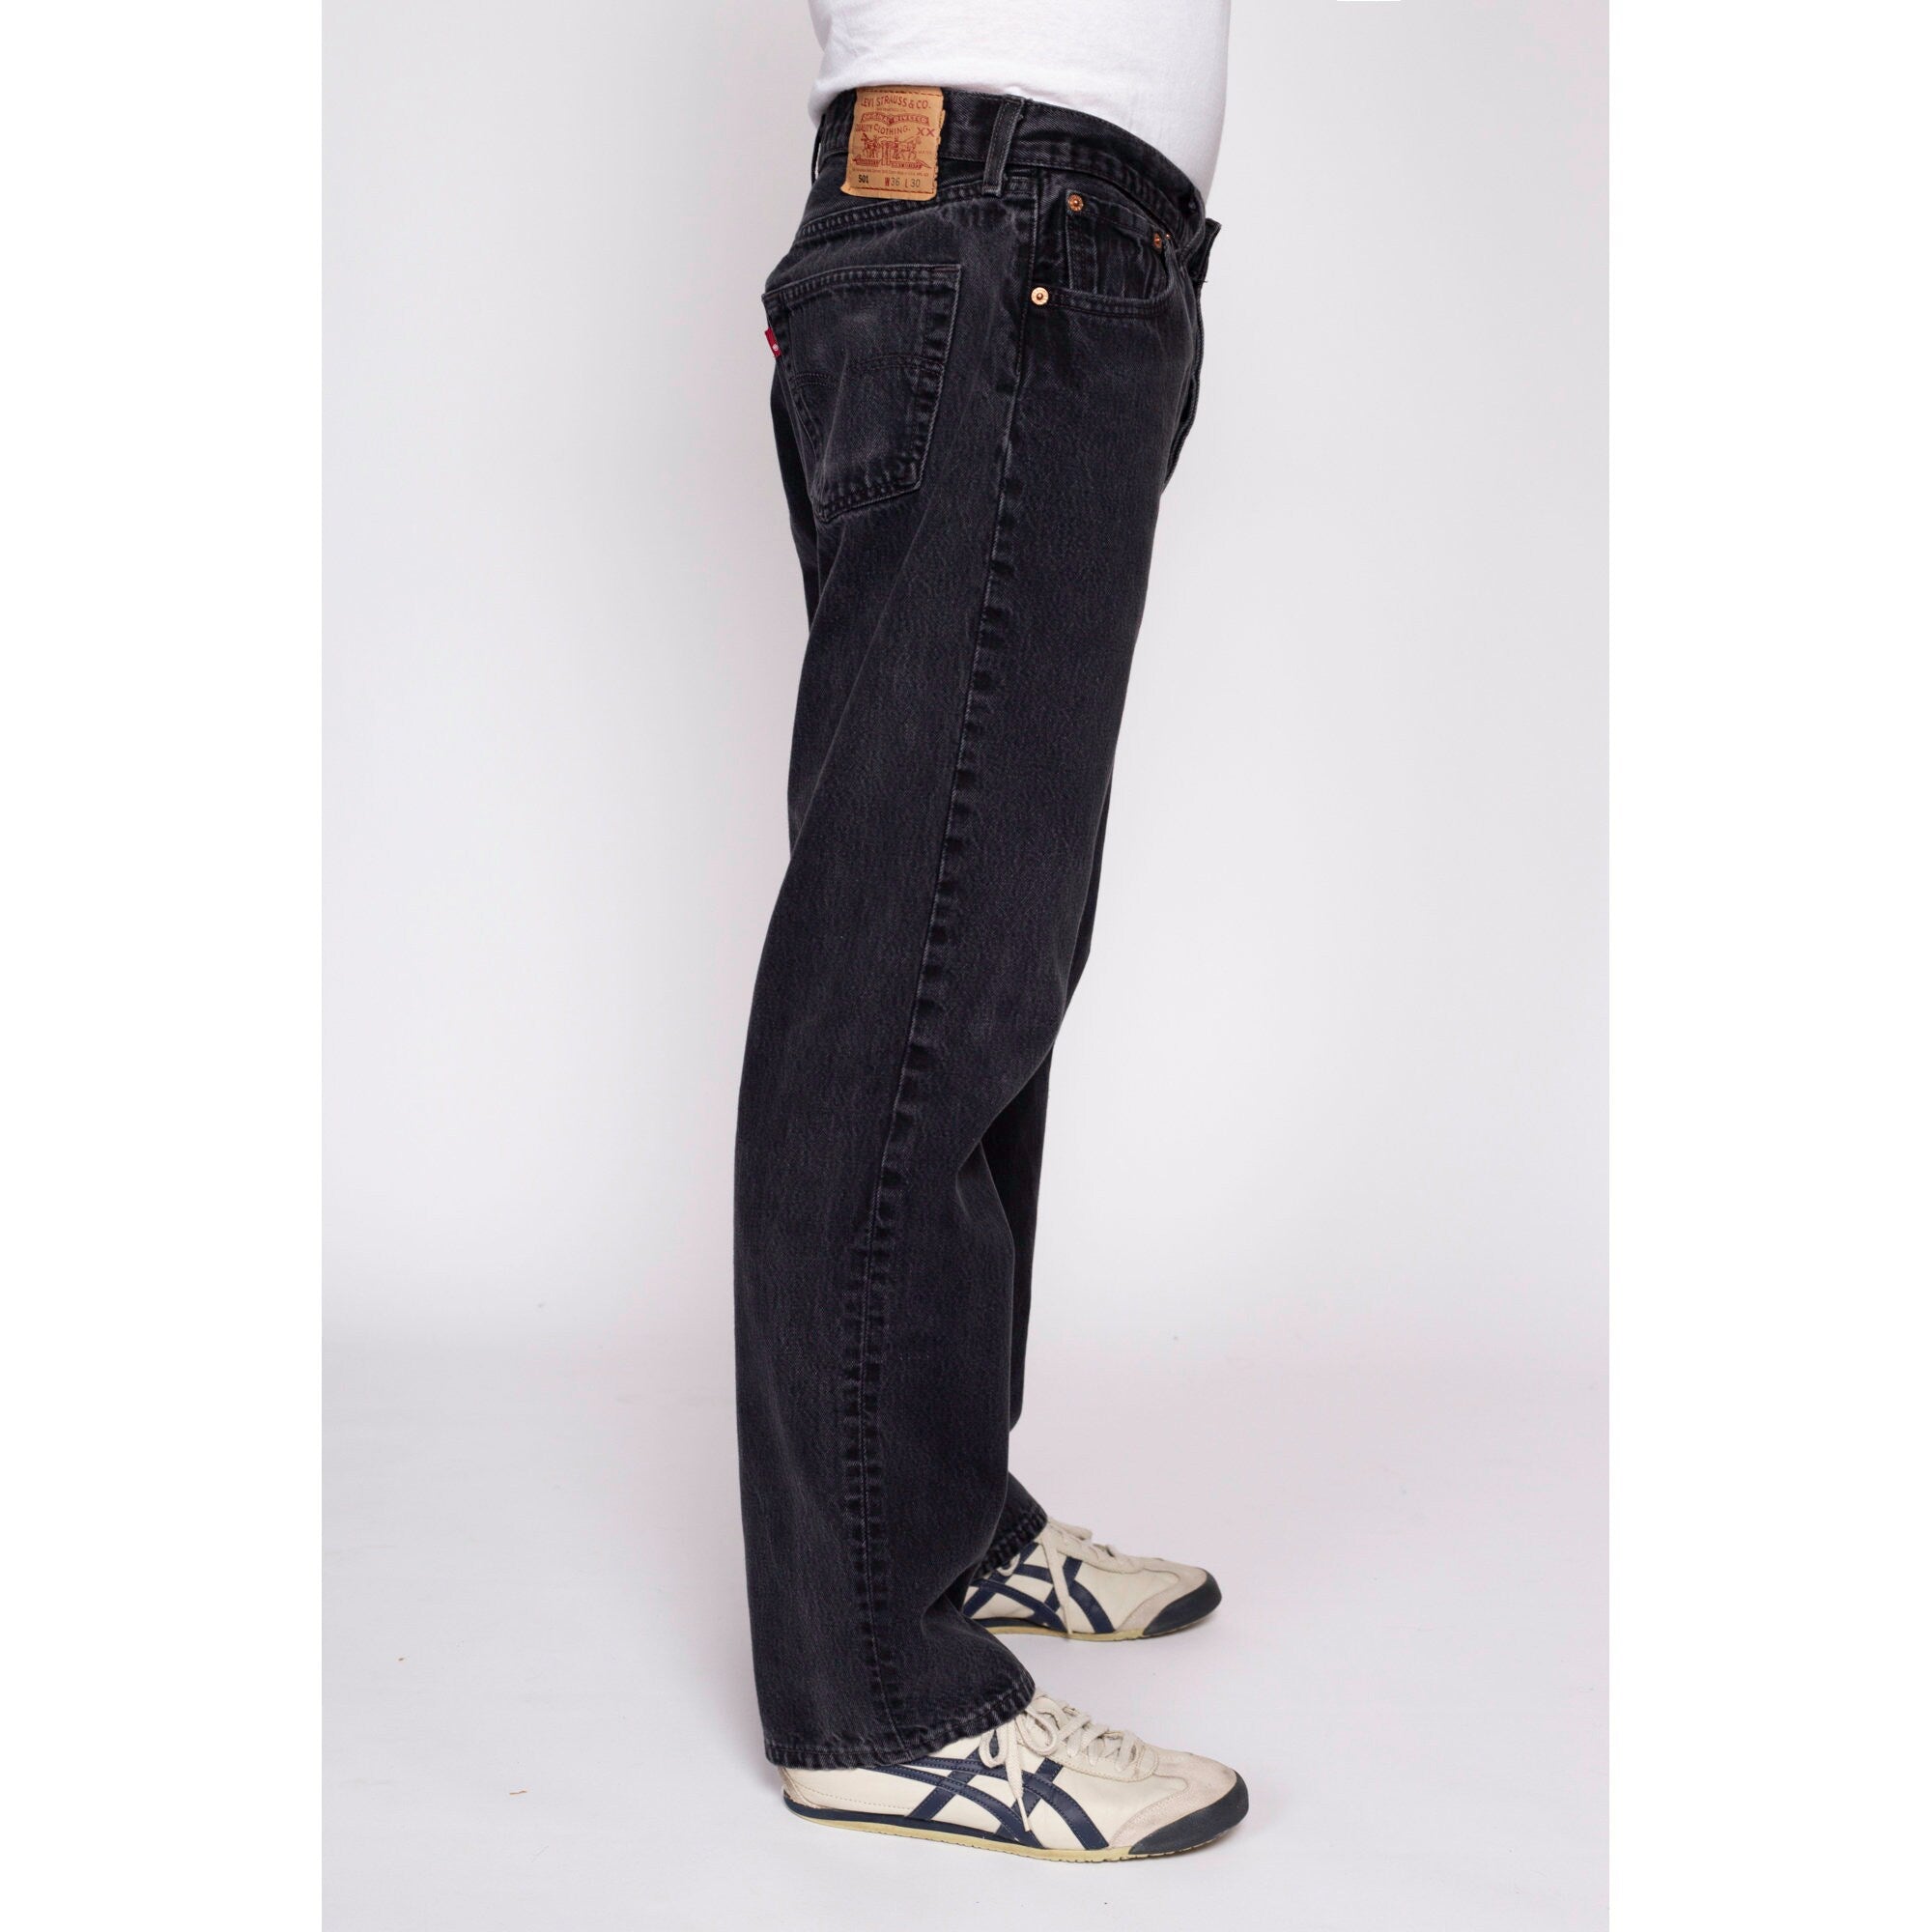 Vintage Levi's 501 Black Jeans - 36x30 – Flying Apple Vintage